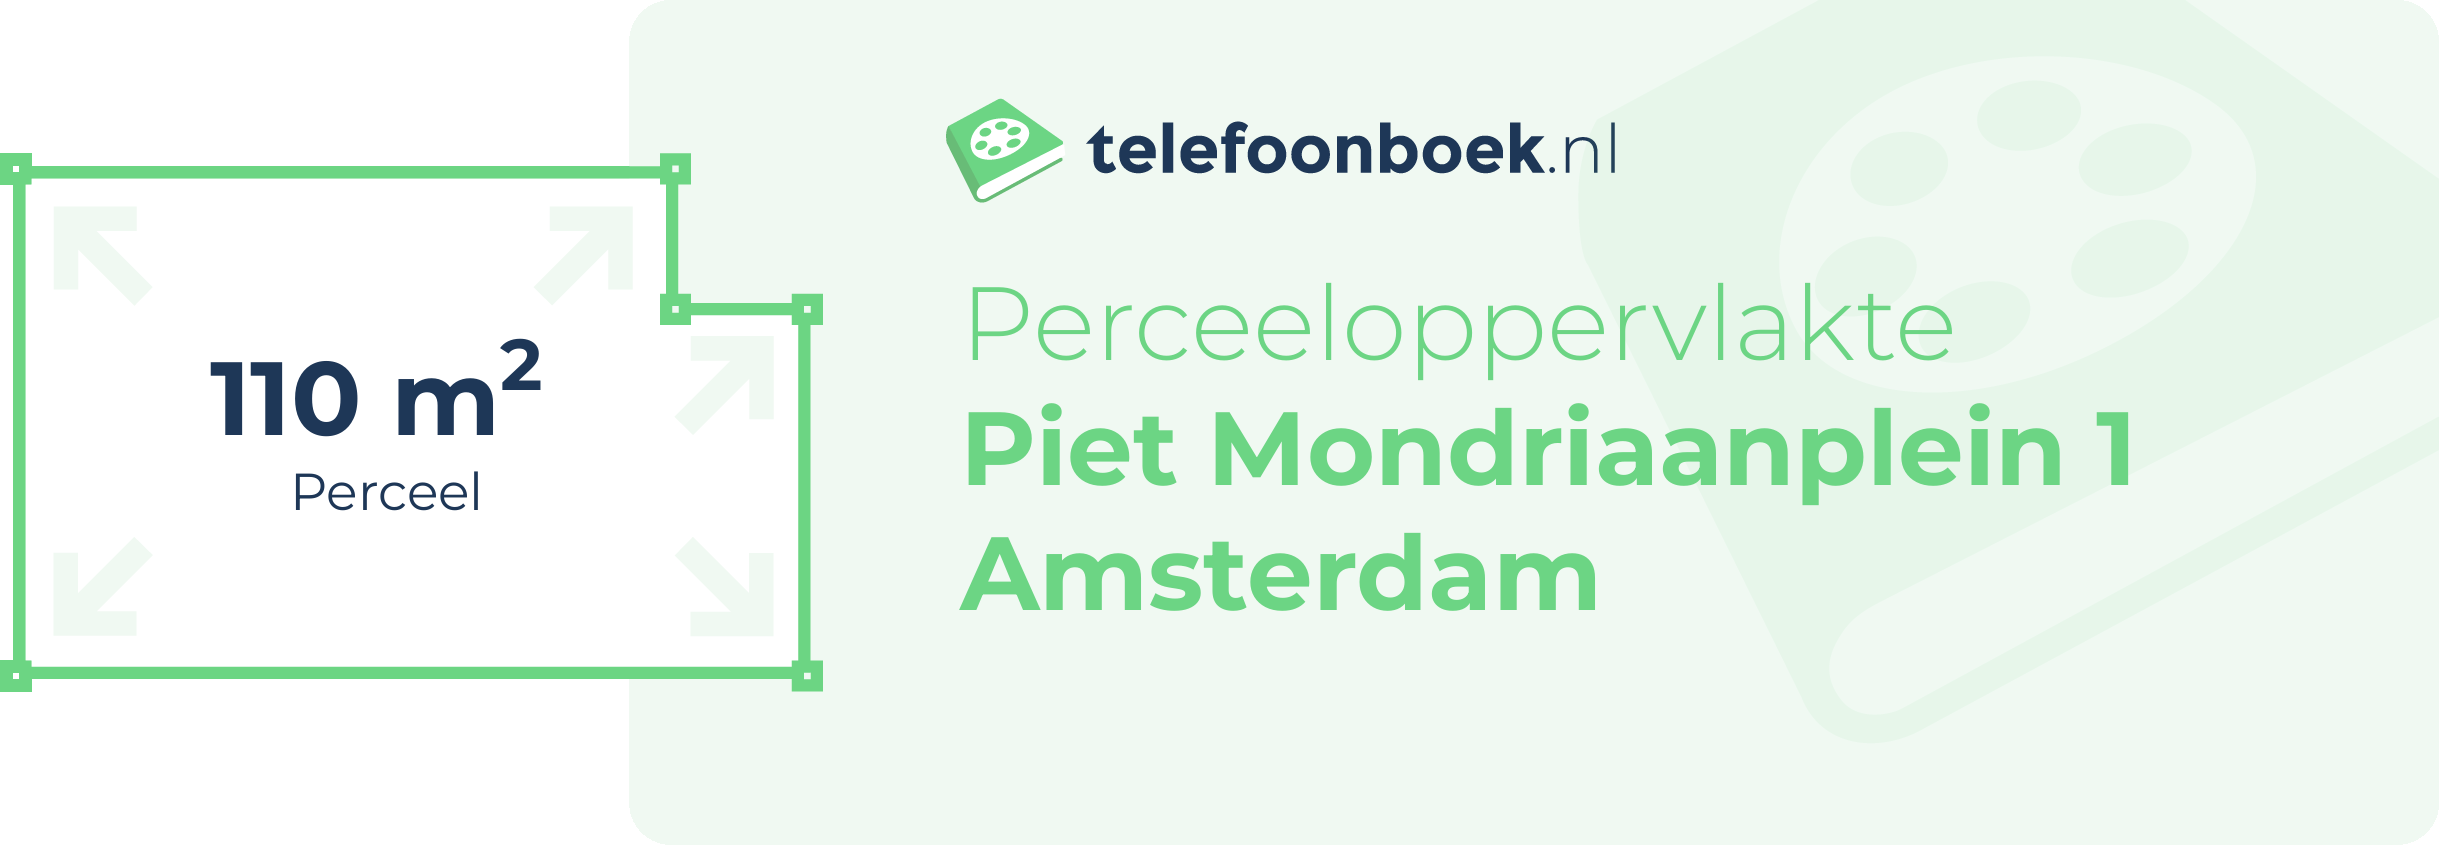 Perceeloppervlakte Piet Mondriaanplein 1 Amsterdam